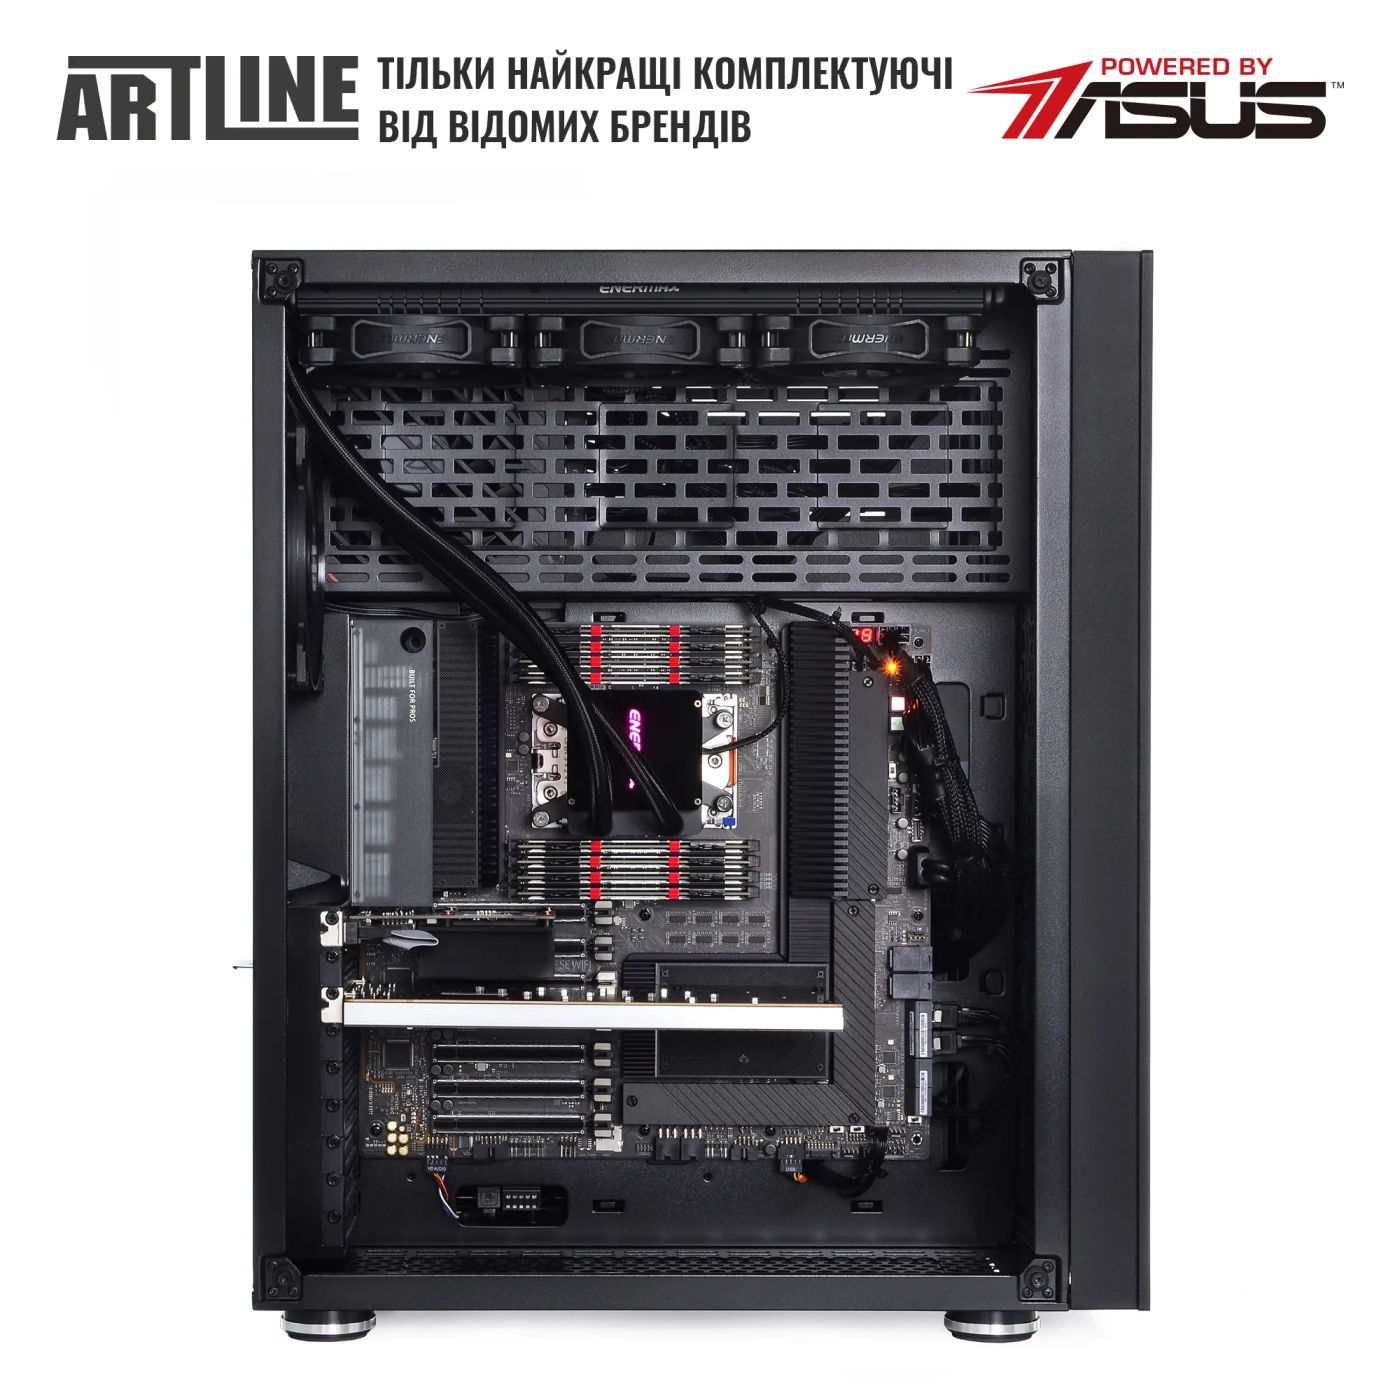 Купить Сервер ARTLINE Business T85v06 - фото 5